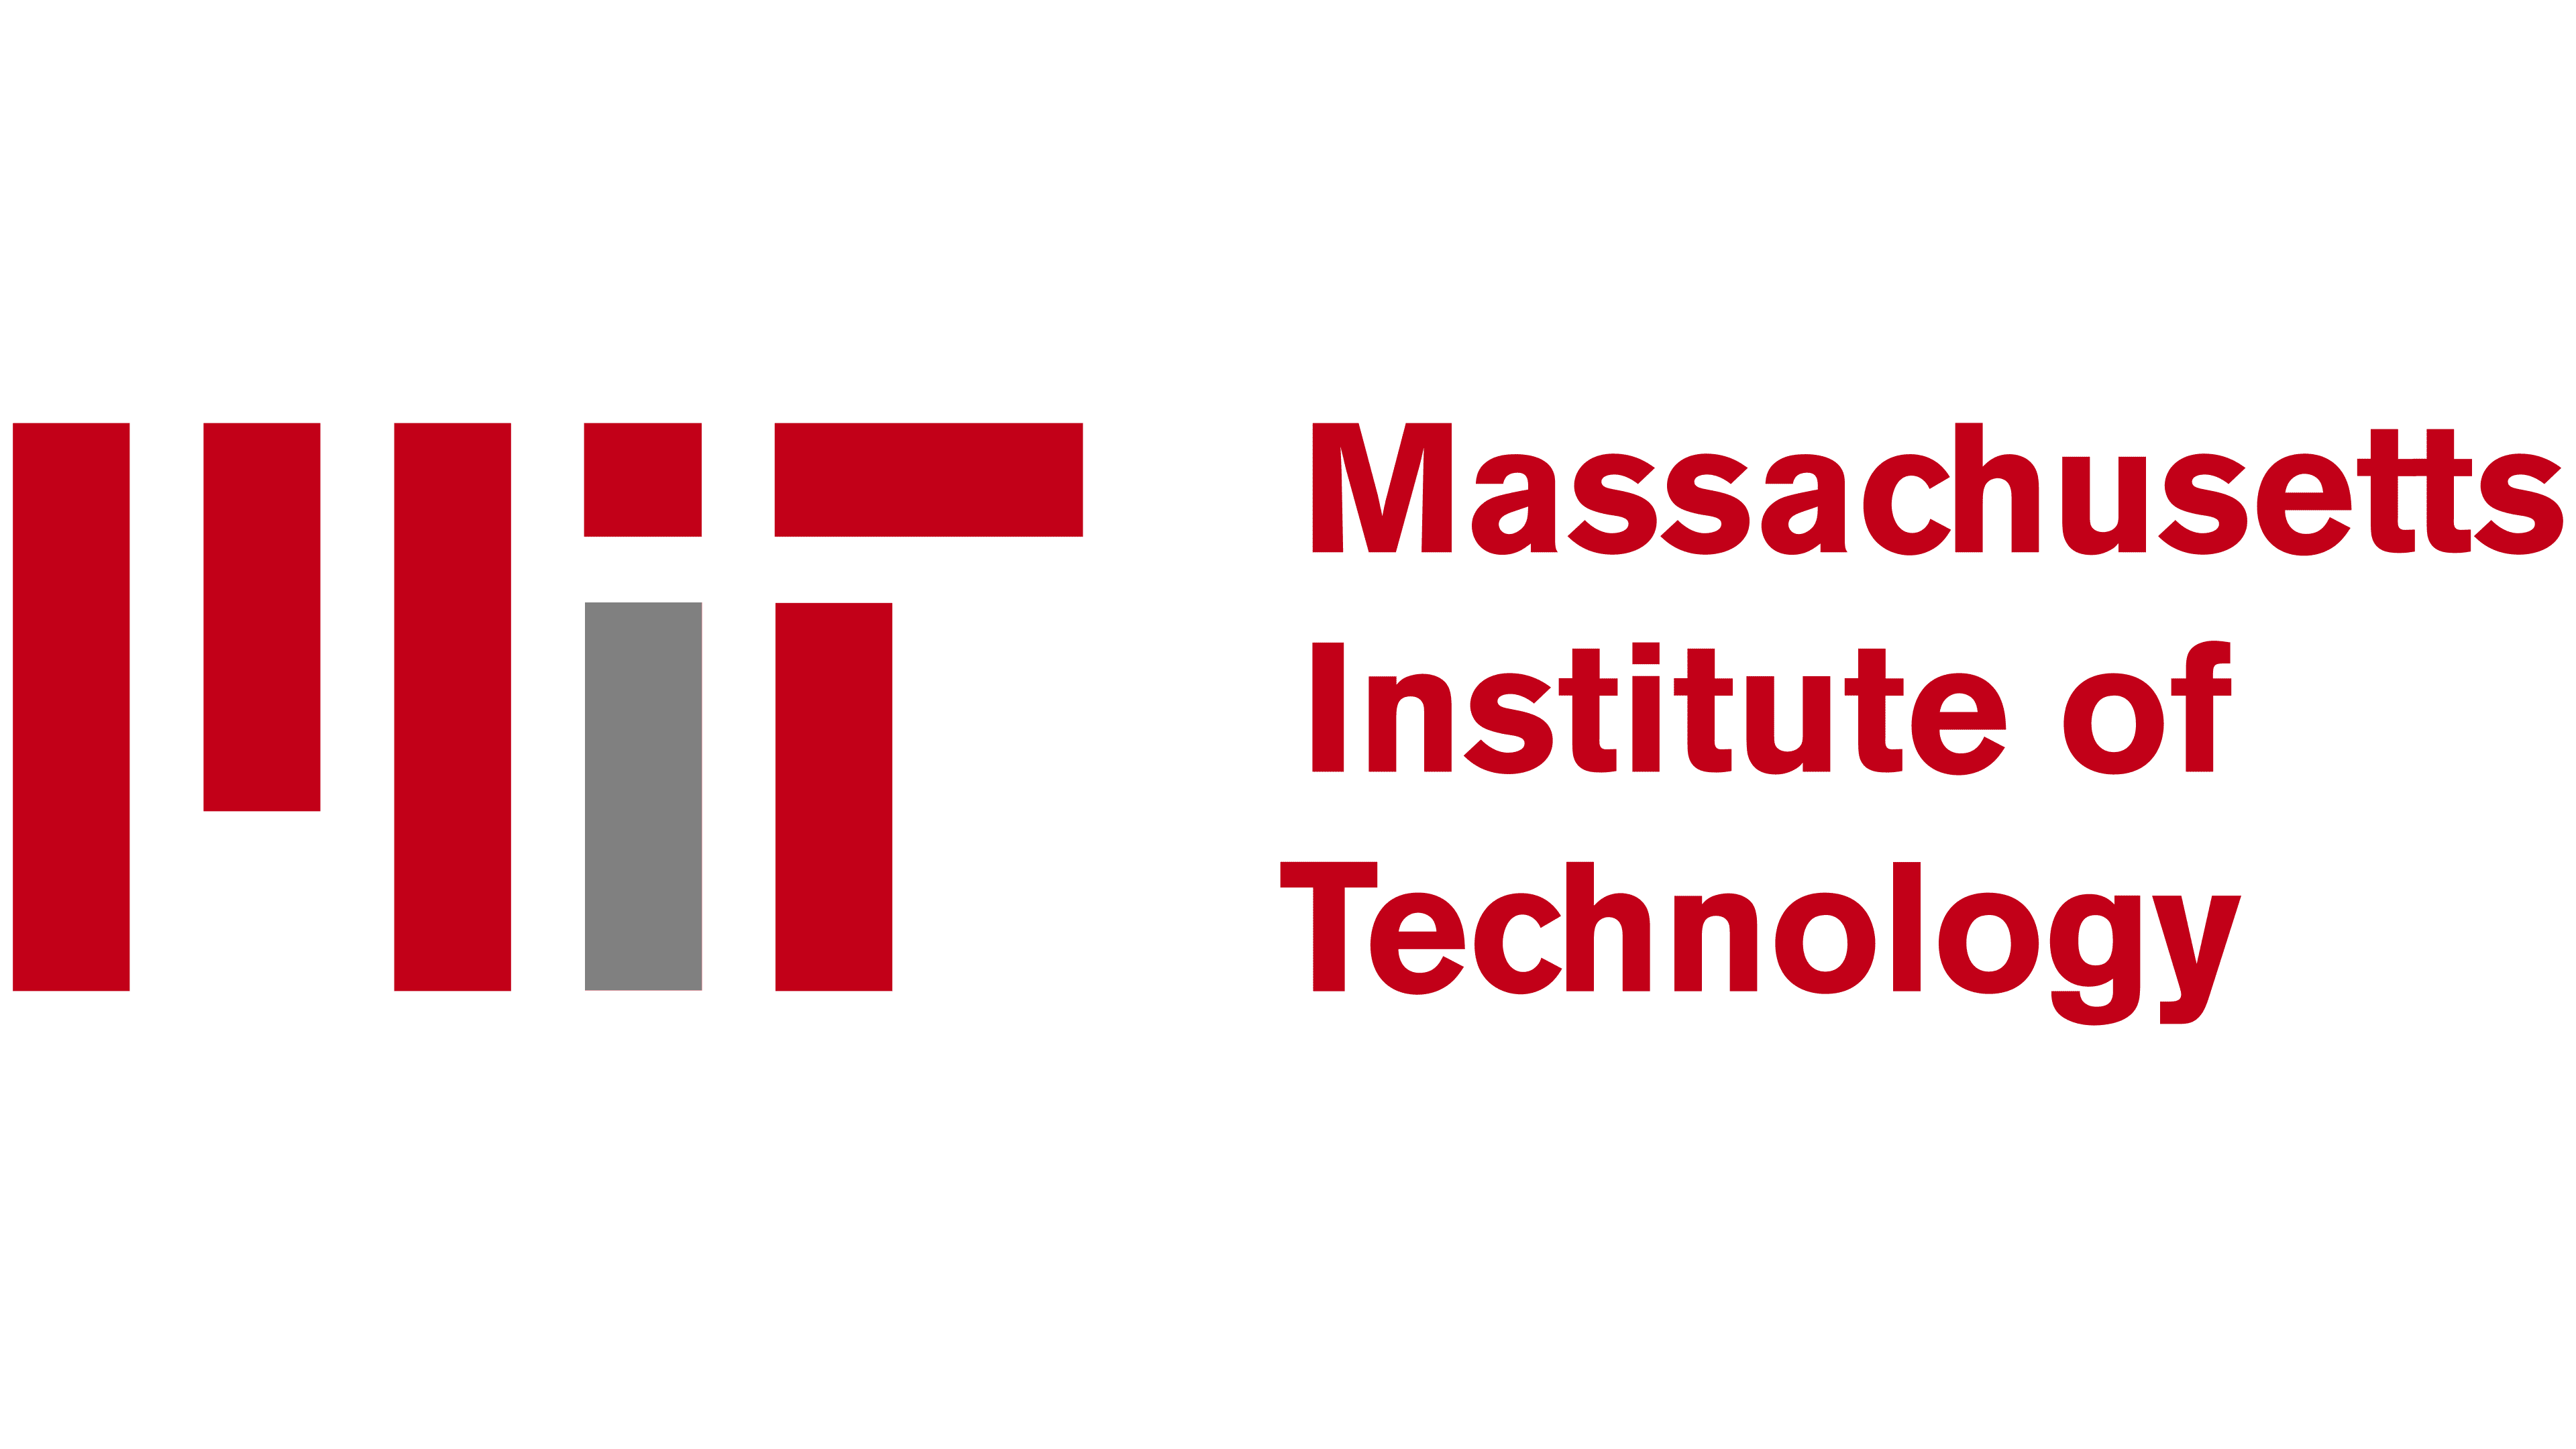 MIT-logo - Storia e significato dell'emblema del marchio